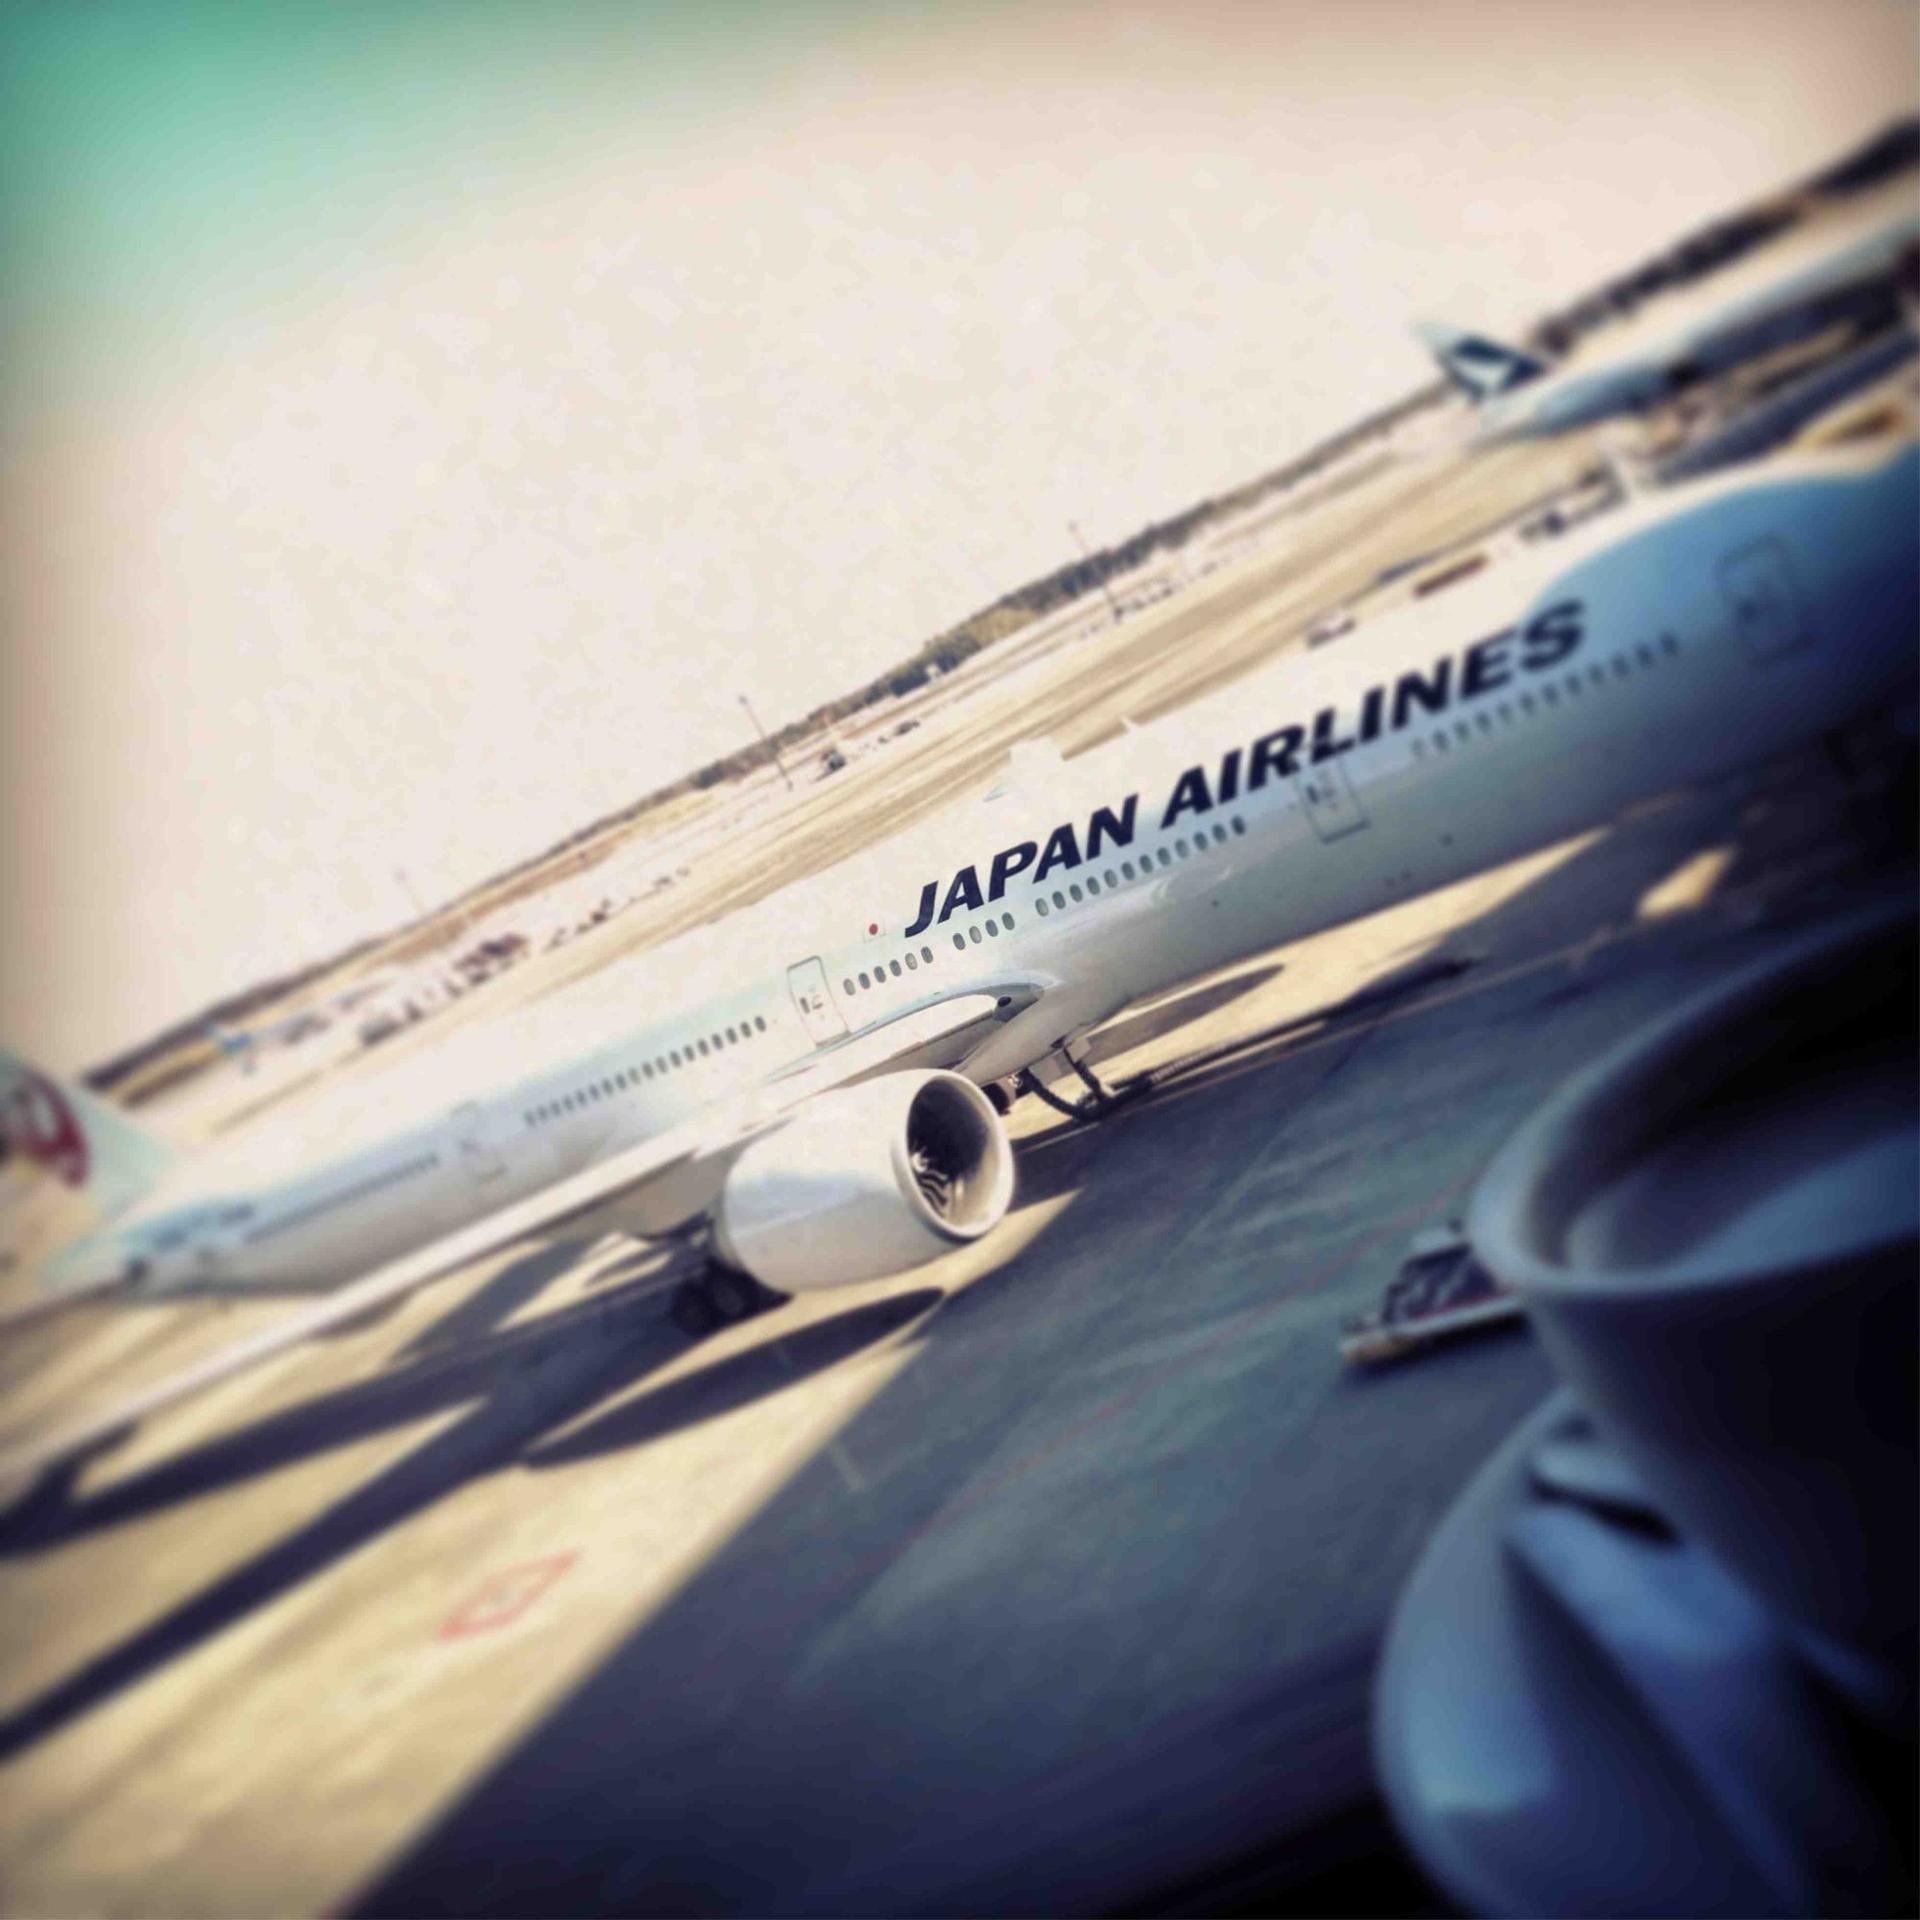 Japan Airlines JAL Sakura Lounge image 21 of 25